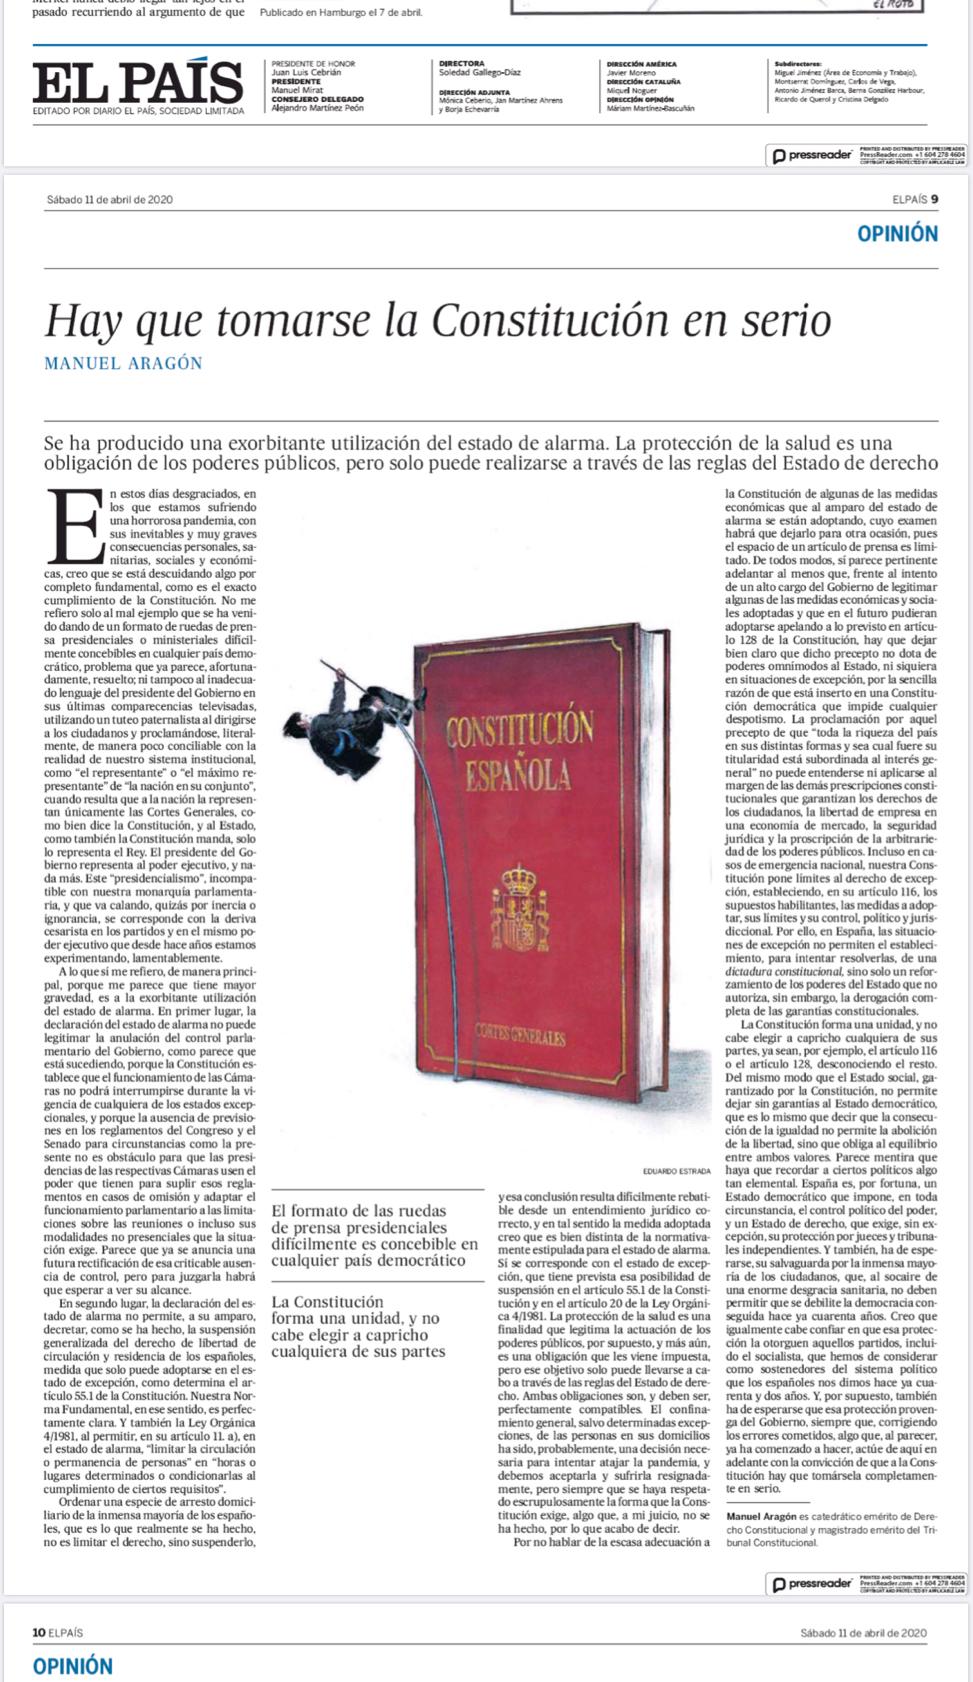 “Hay que tomarse la Constitución en serio” de MAnuel Aragón - Ignacio Isusi